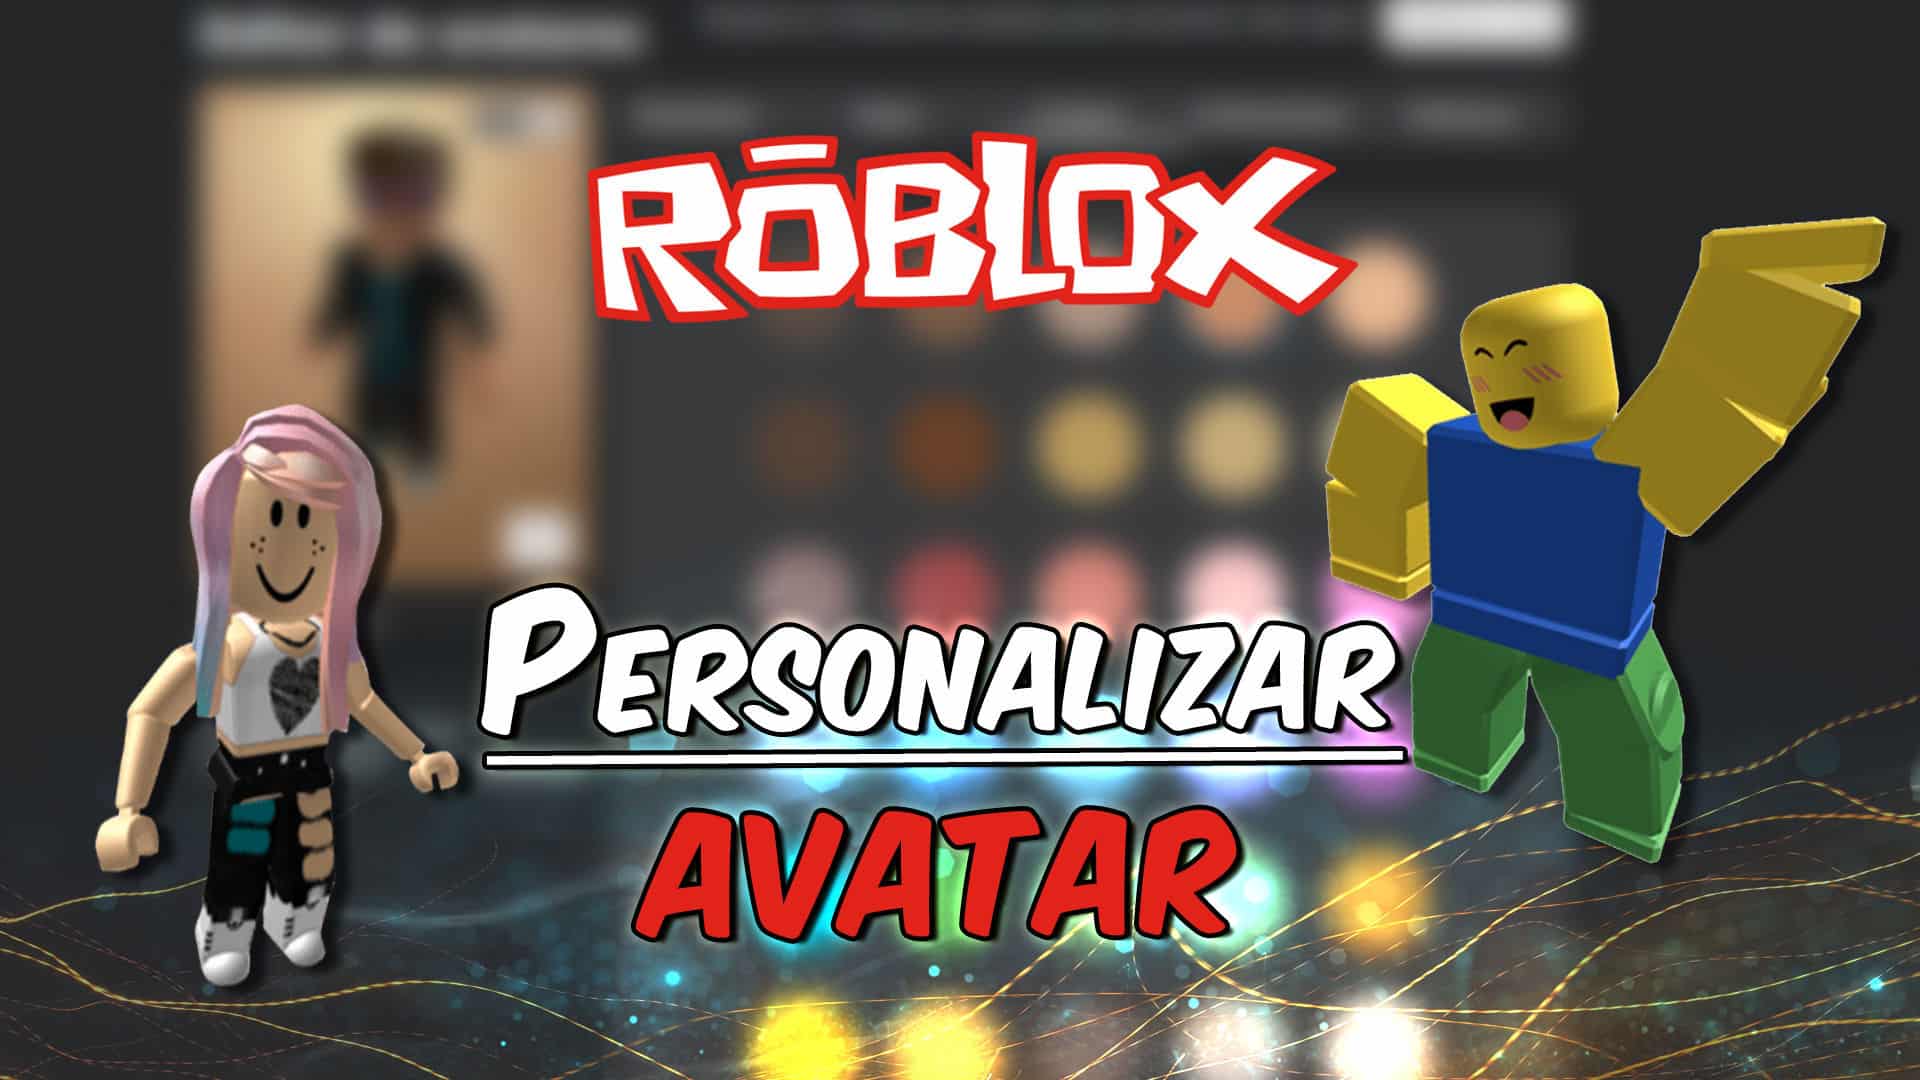 guia definitiva como obtener skins exclusivas en roblox descubre los secretos para personalizar tu avatar